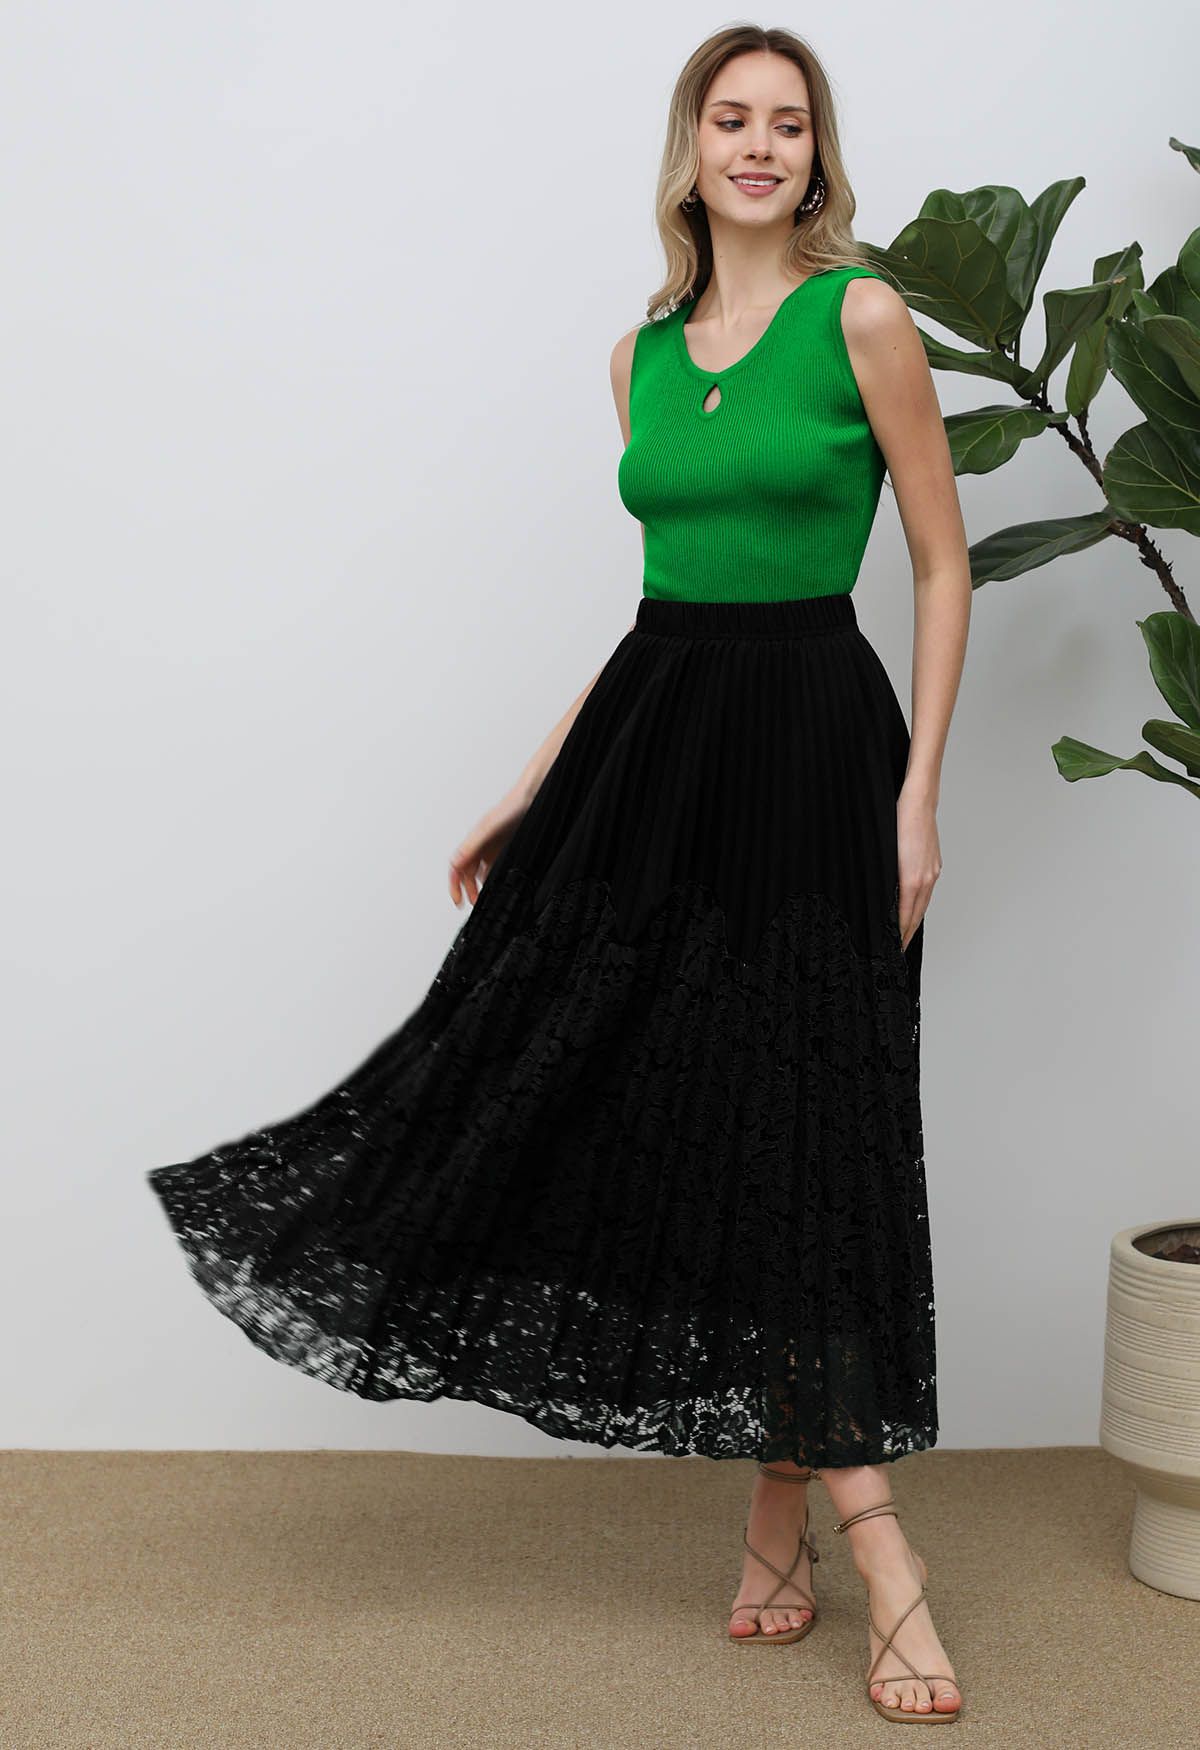 Falda larga plisada con empalme de encaje floral en negro